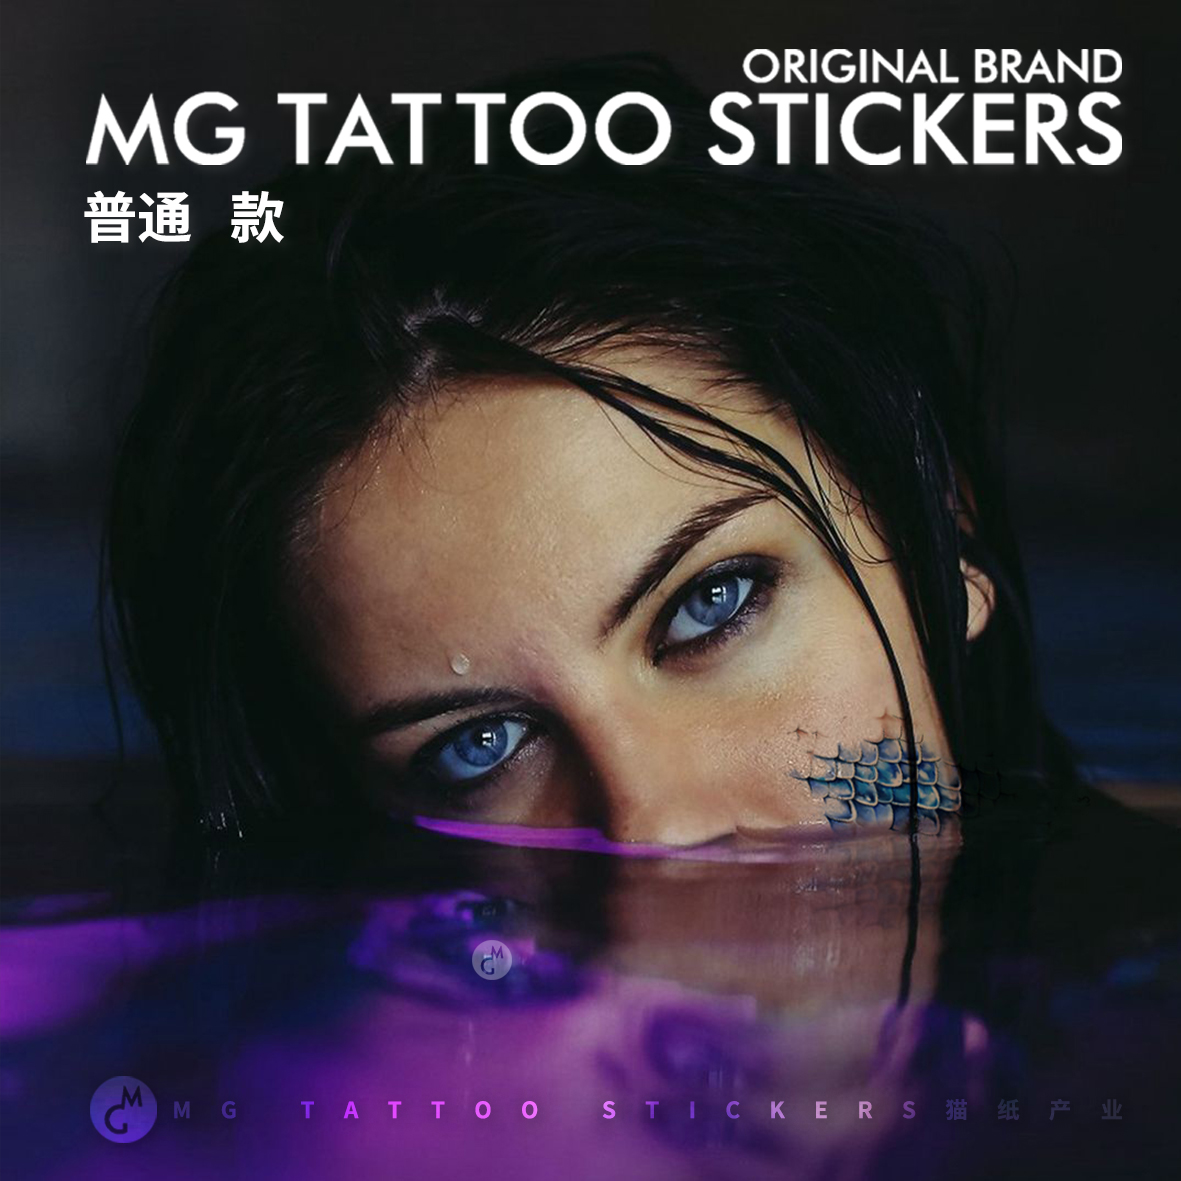 MG tattoo 蓝海鲛人 海洋浪漫传说脸部美妆脚踝手臂遮疤纹身贴纸